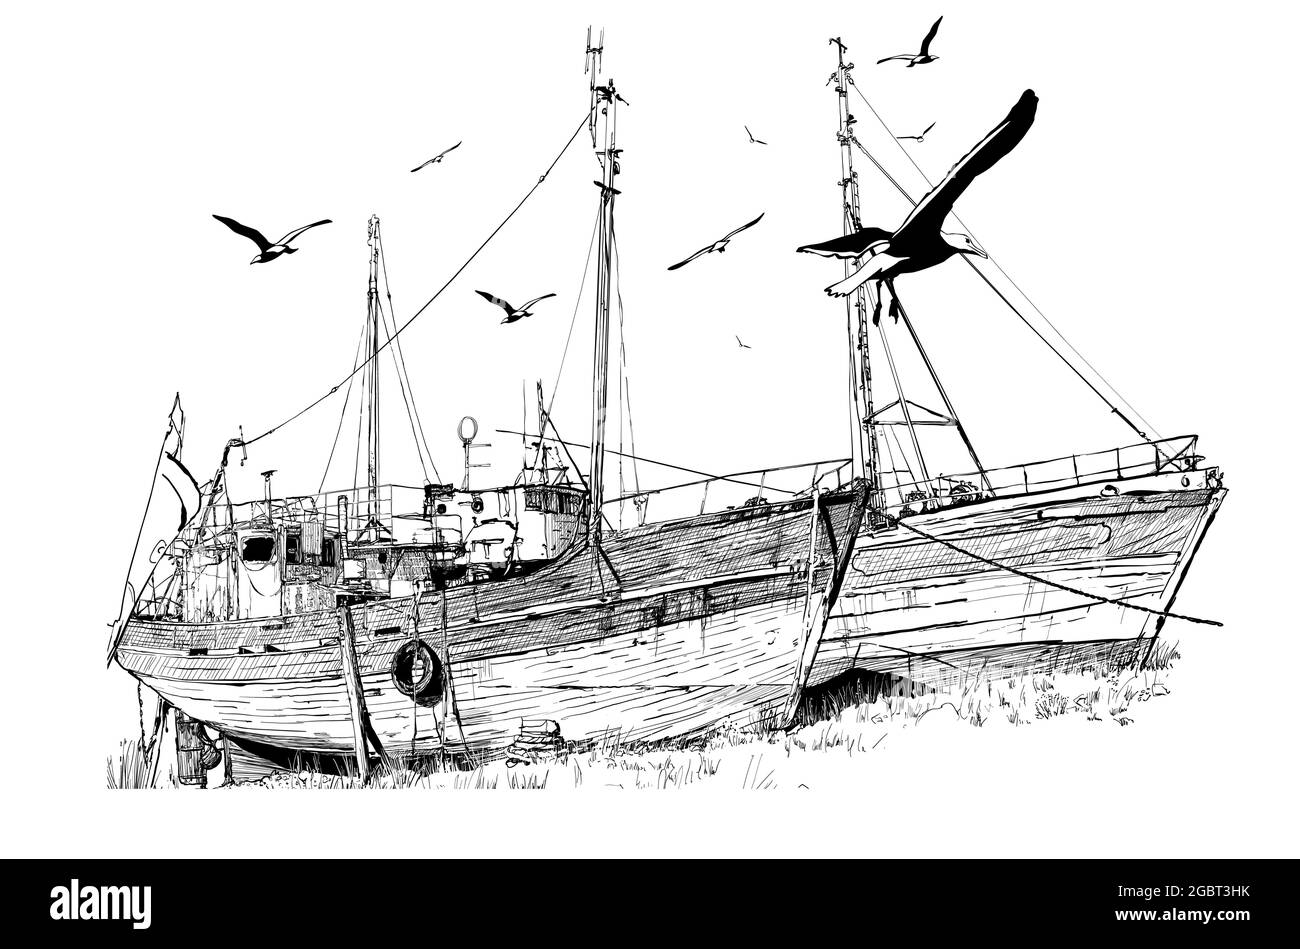 Dessin de deux vieux bateaux de pêche abandonnés à marée basse, Bretagne, France. - illustration vectorielle Illustration de Vecteur